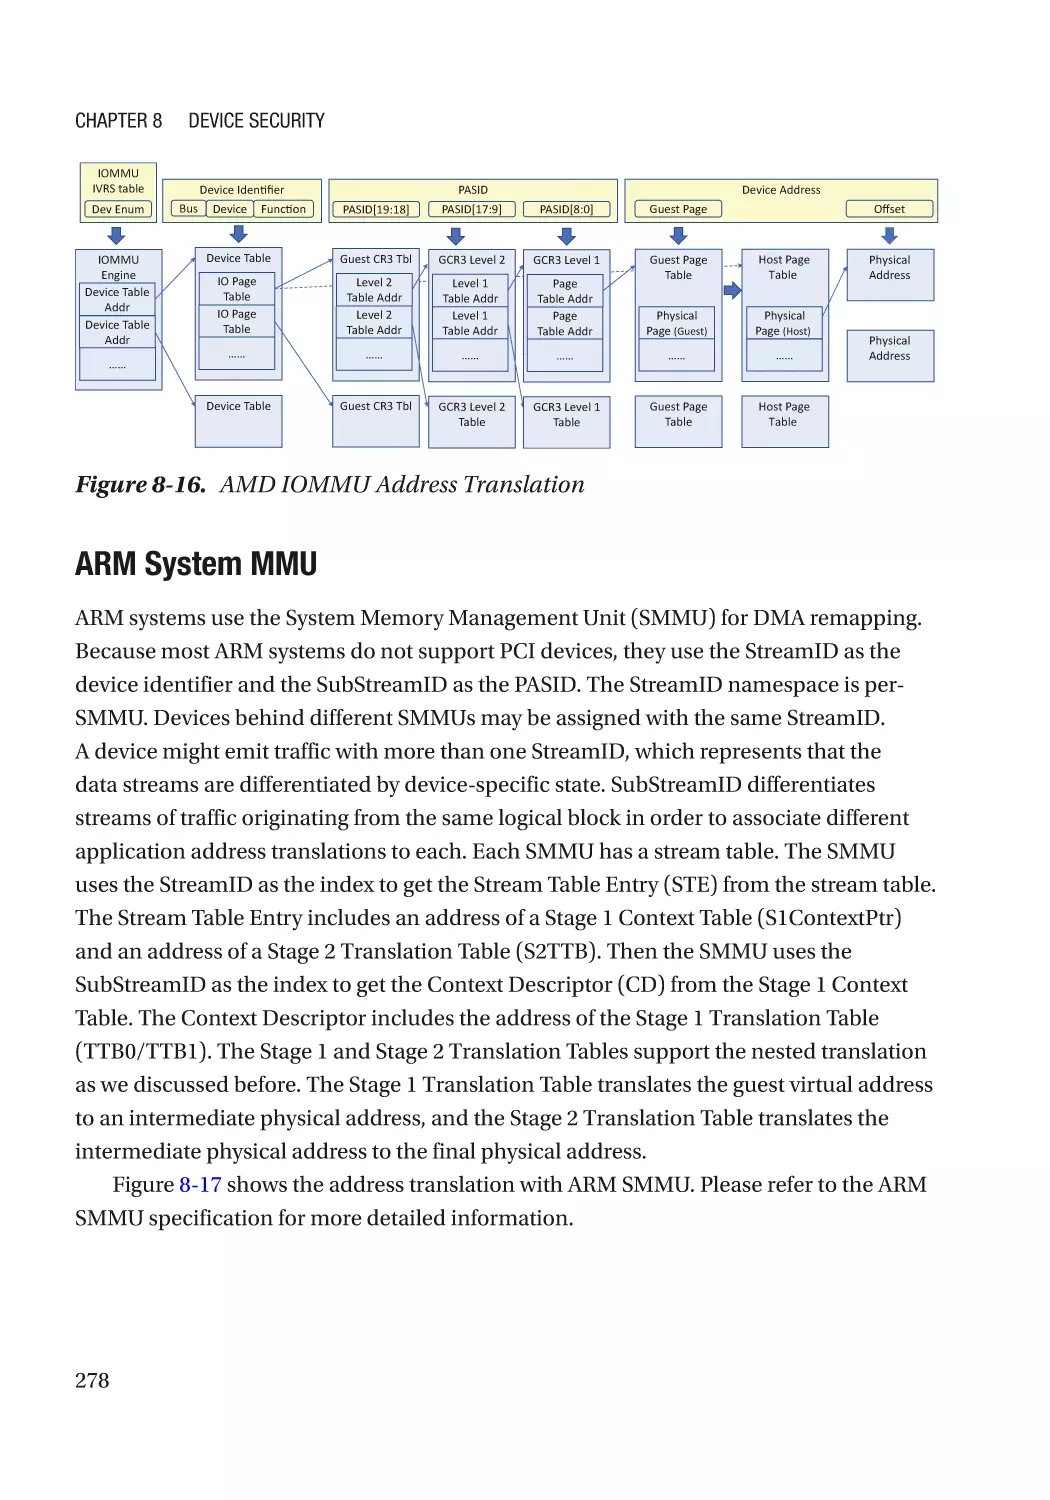 ARM System MMU